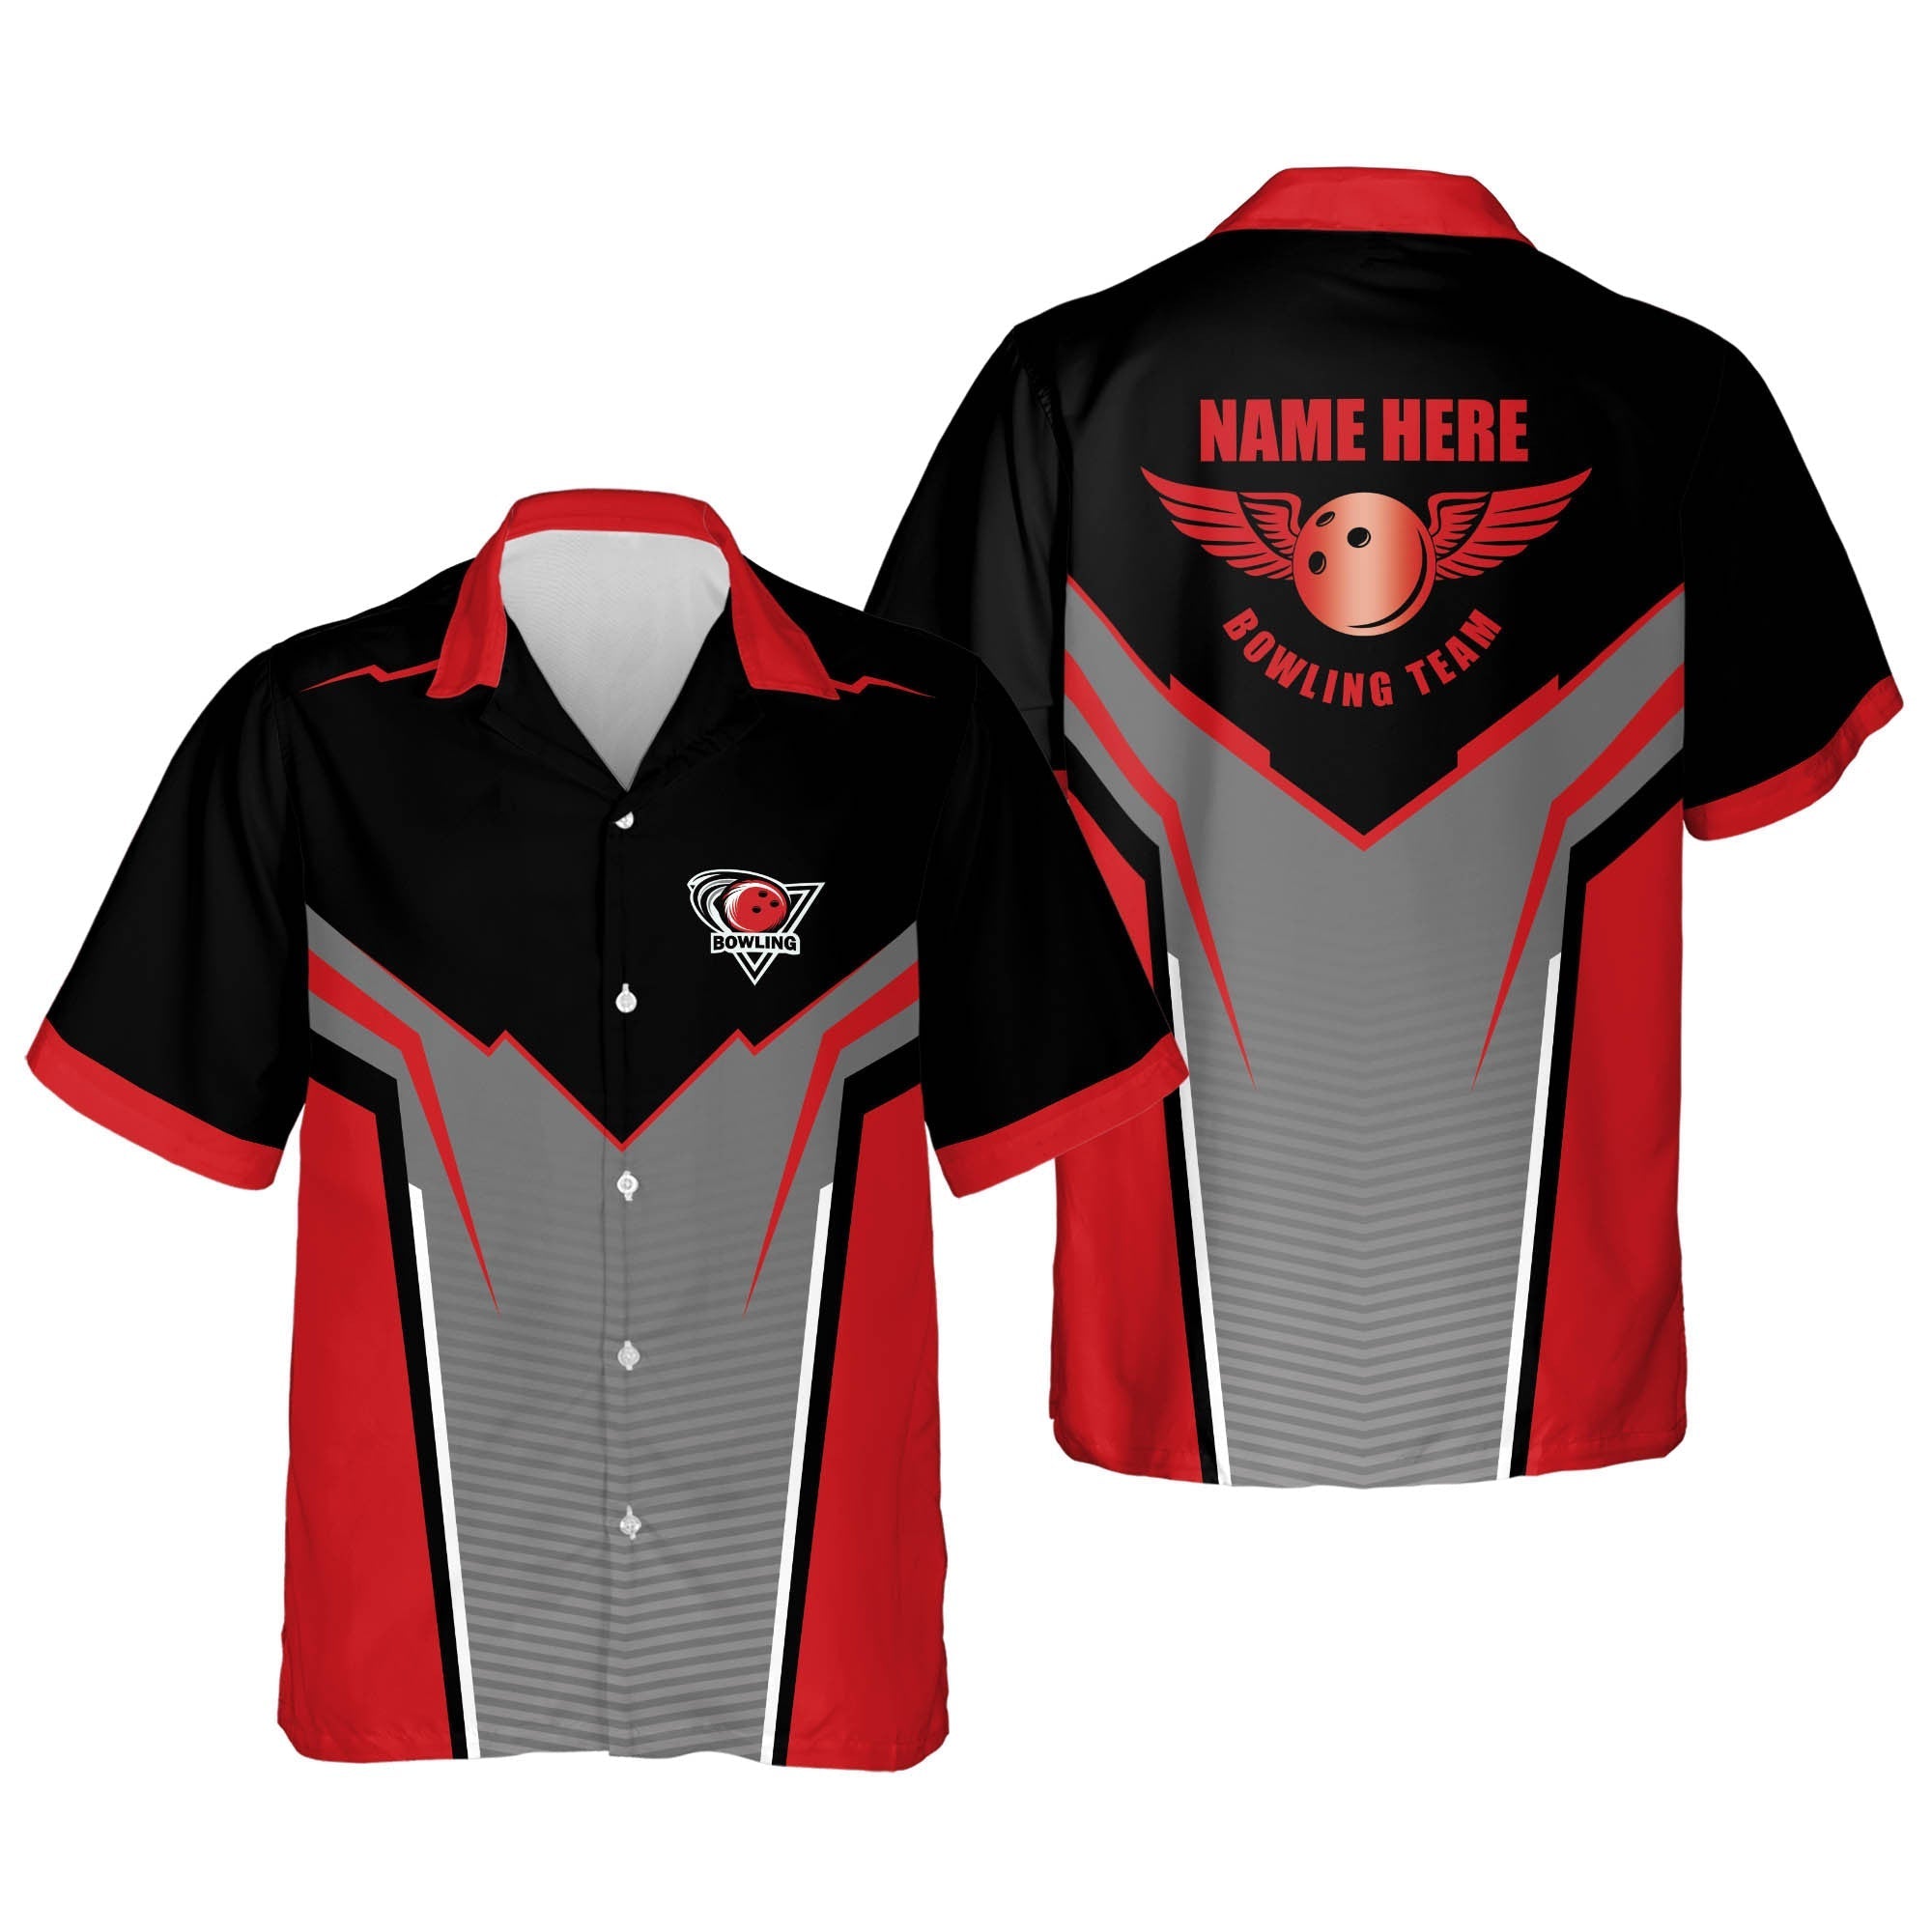 Lovelypod Bowling Short Sleeve Hawaiian shirt for men and women/ Summer gift for Bowling team shirt